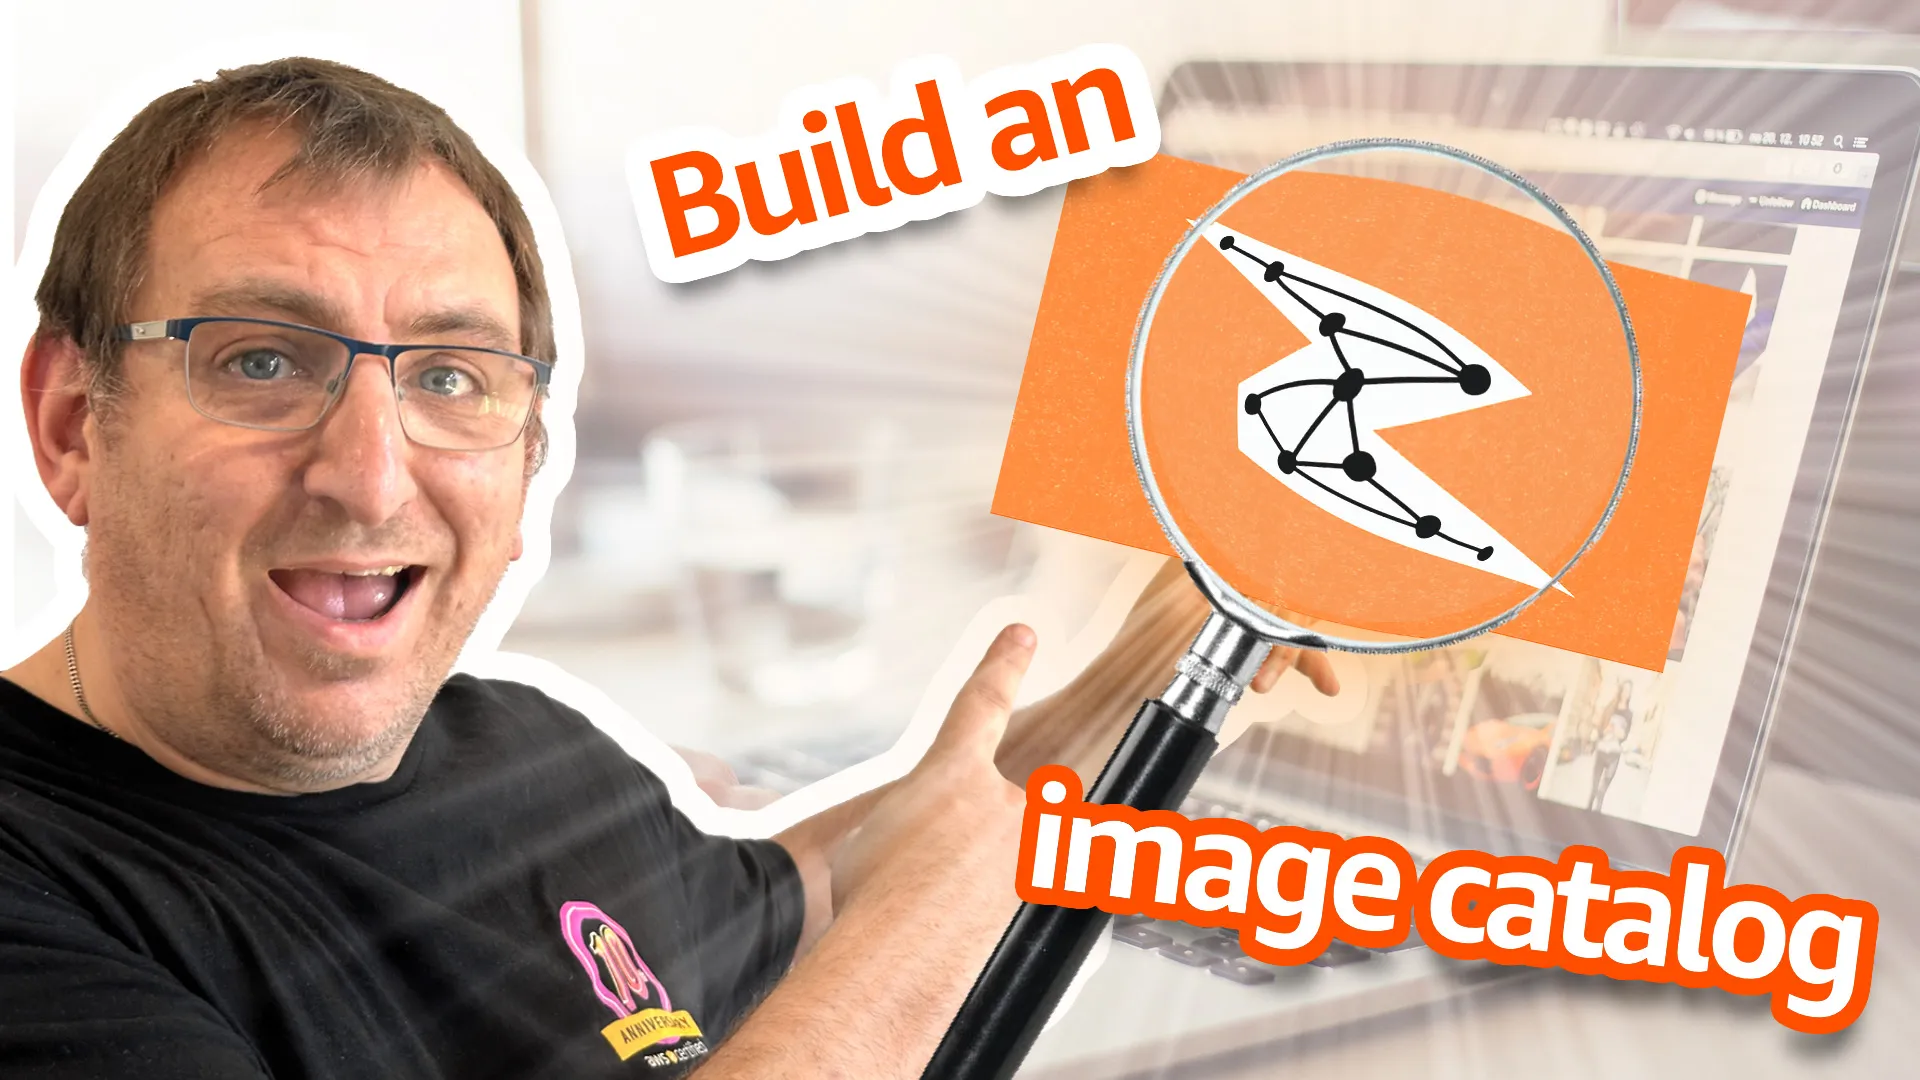 Build an AI image catalogue! - Claude 3 Haiku